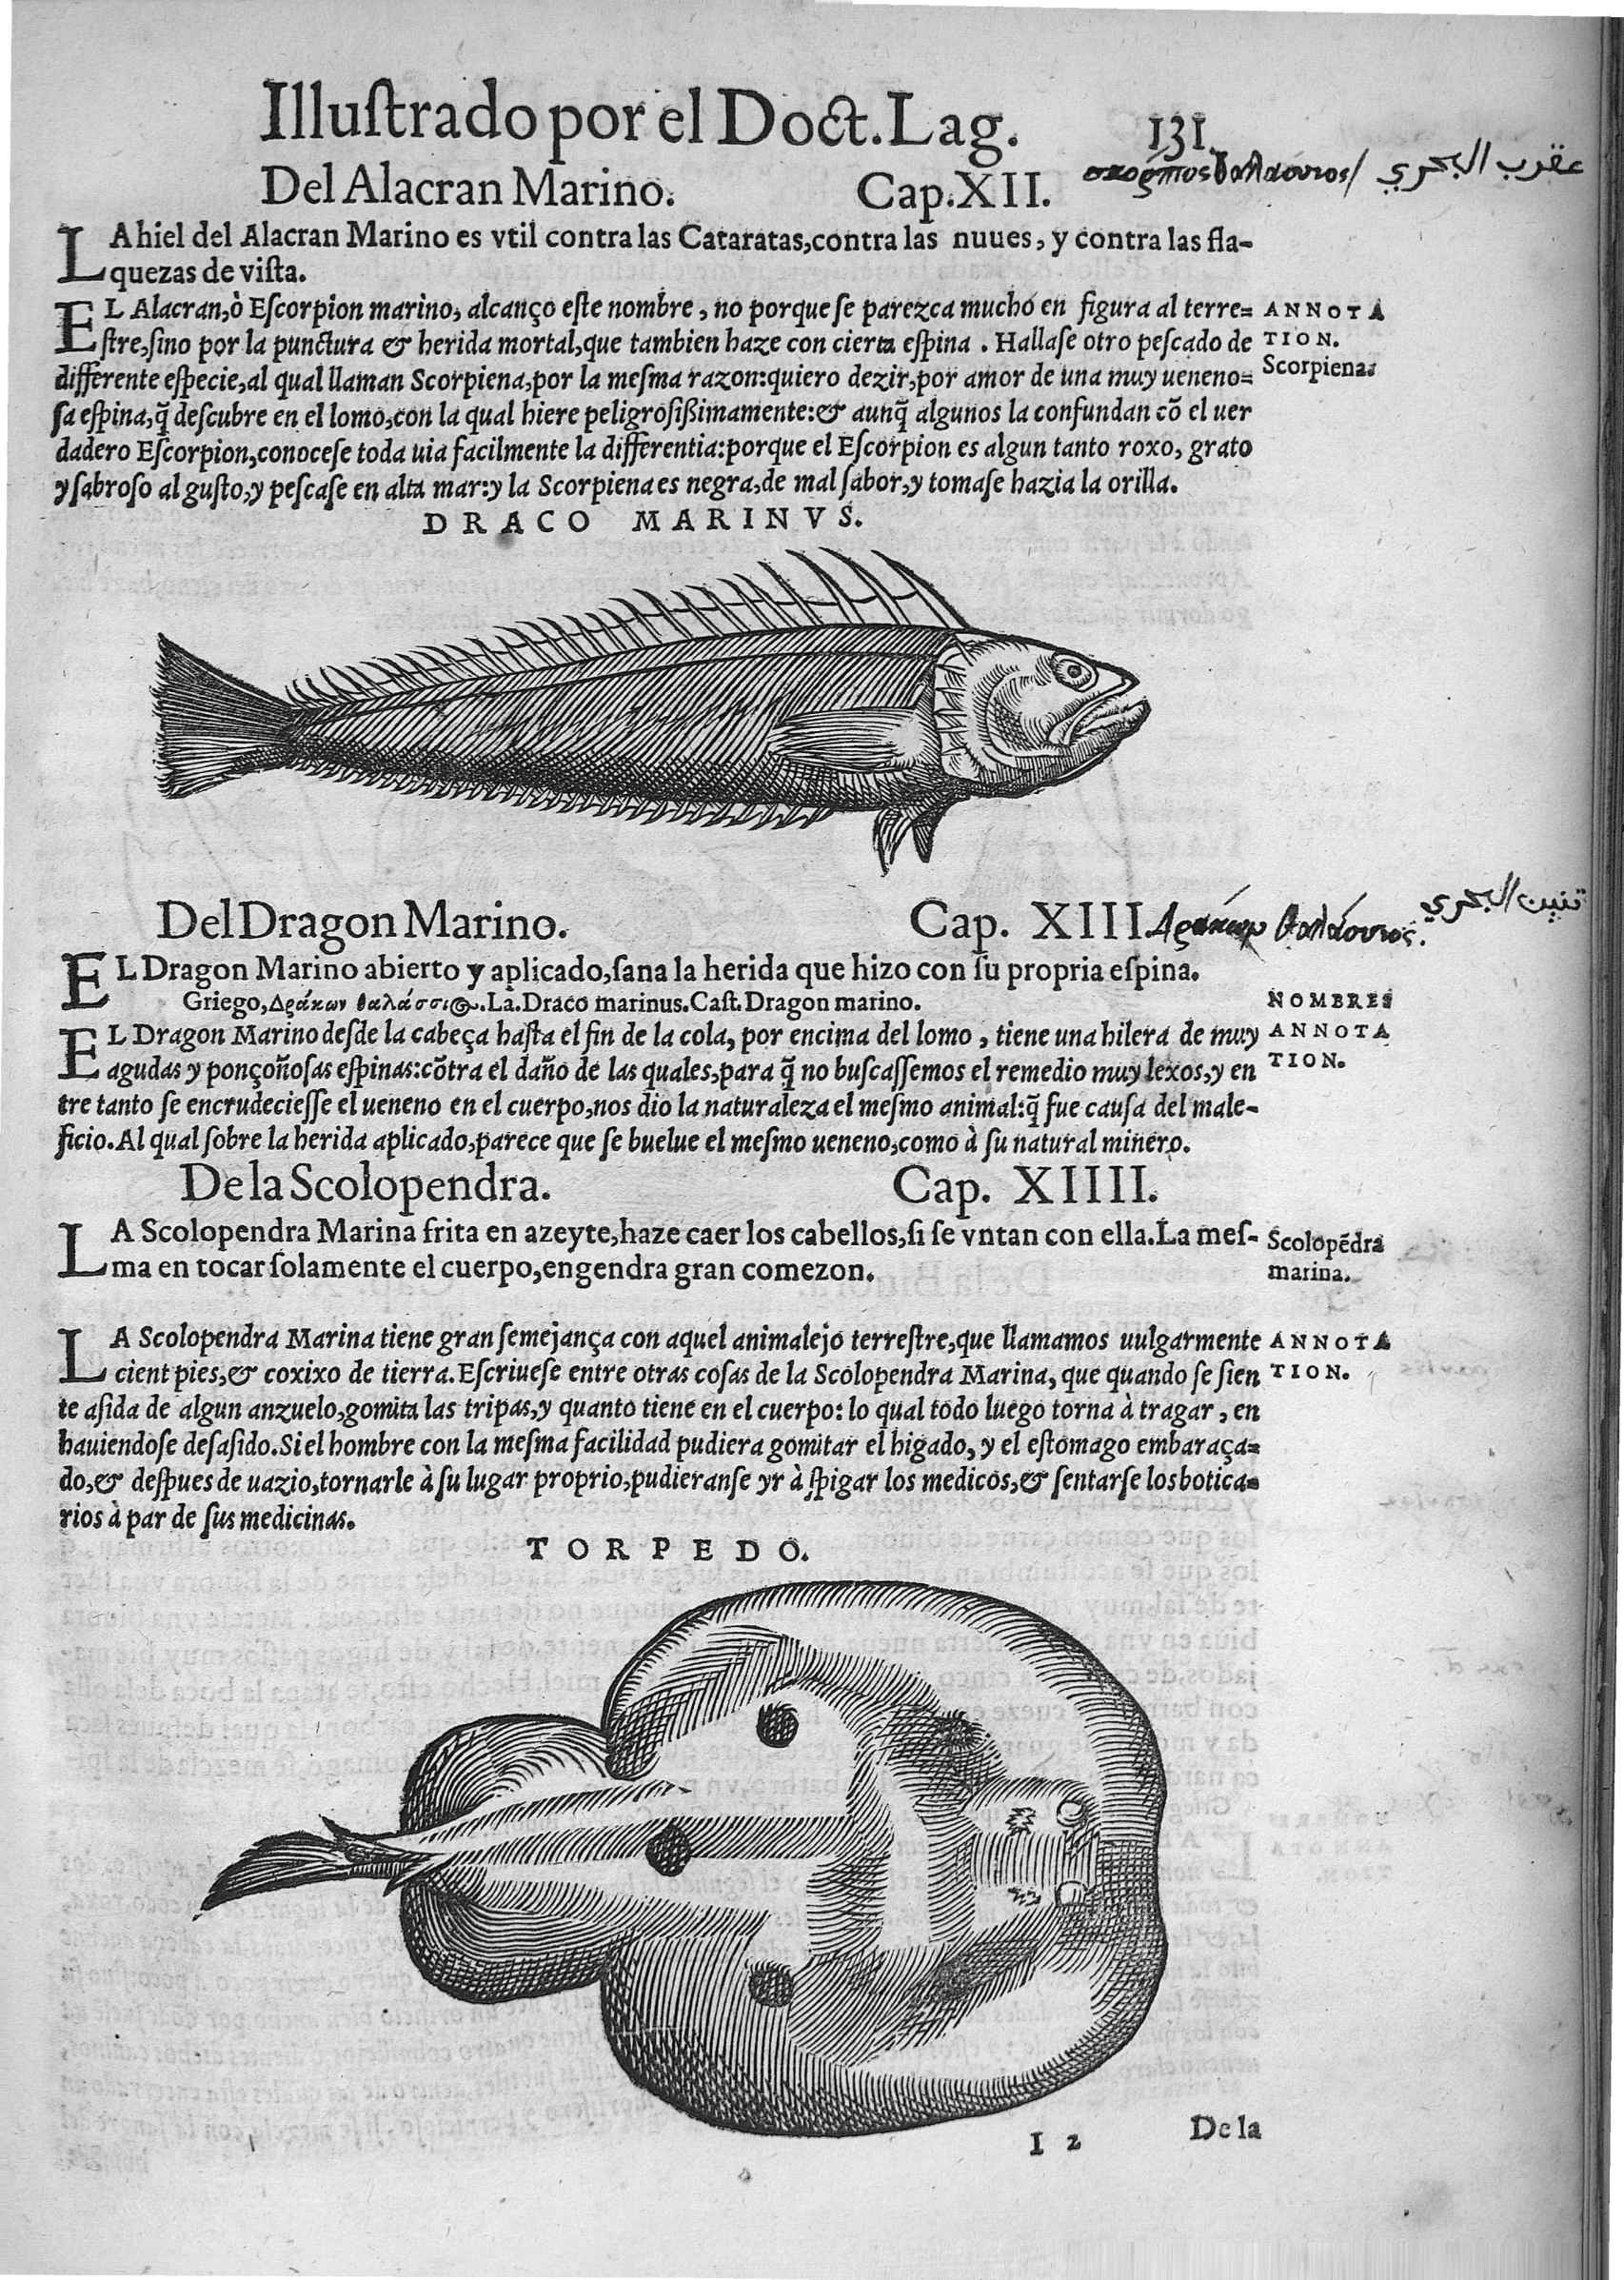 Página de la obra Dióscorides traducida y comentada por el doctor Andrés Laguna. Impresa en 1555 en Amberes